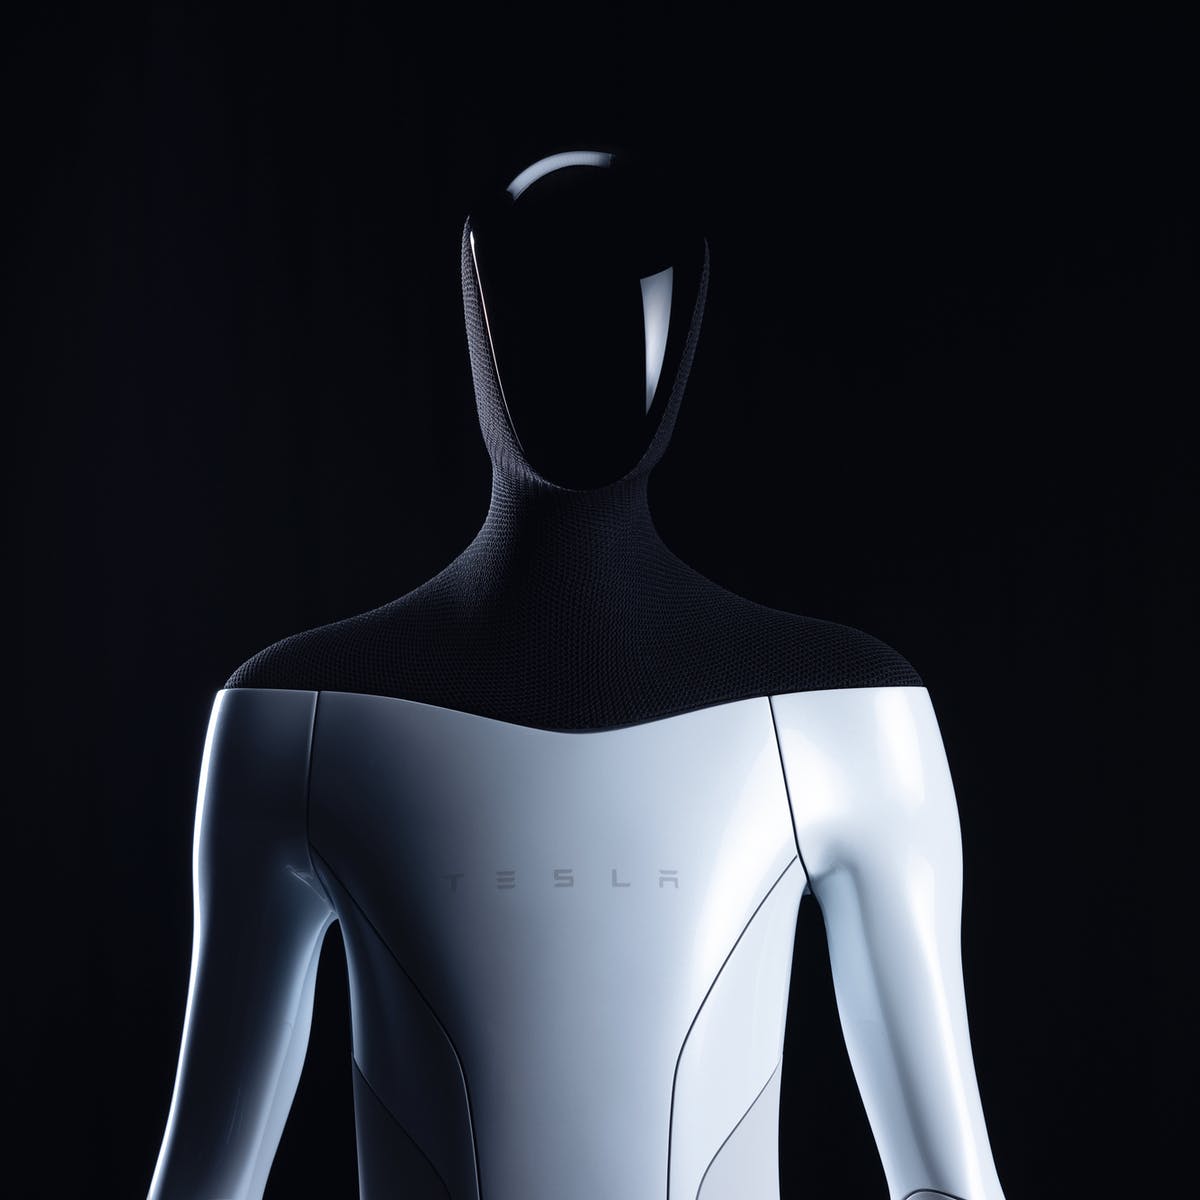 V roku 2023 by sa mal začať vyrábať humanoid od Tesly